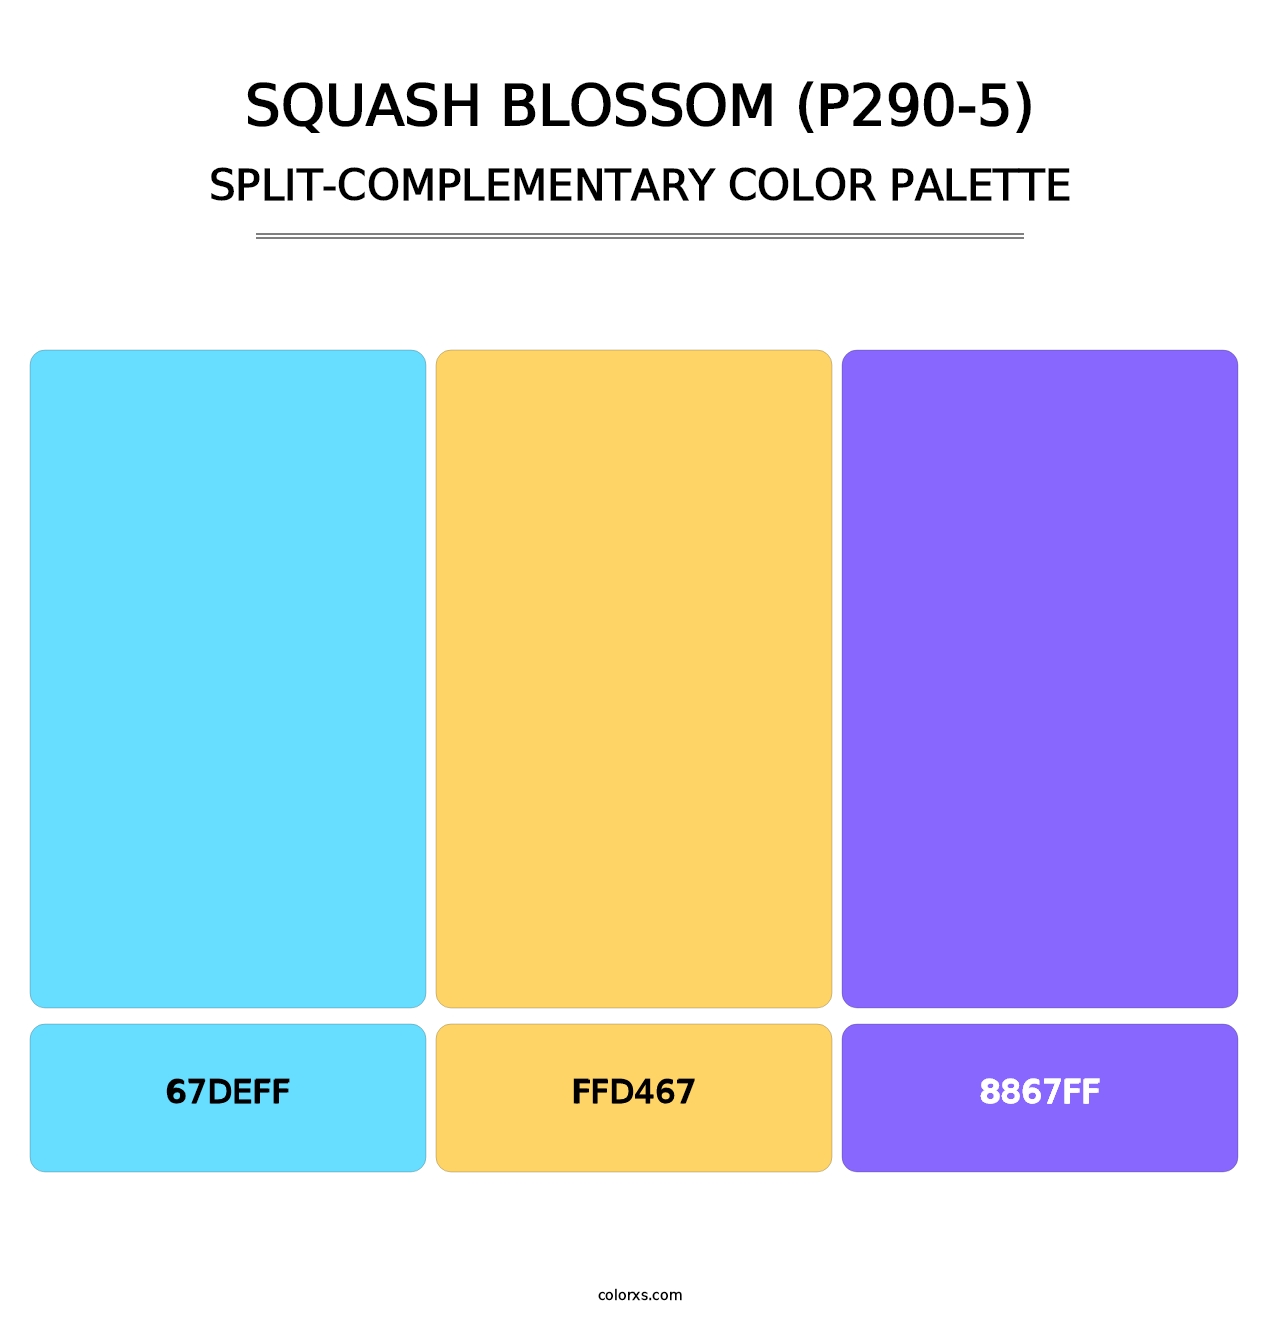 Squash Blossom (P290-5) - Split-Complementary Color Palette